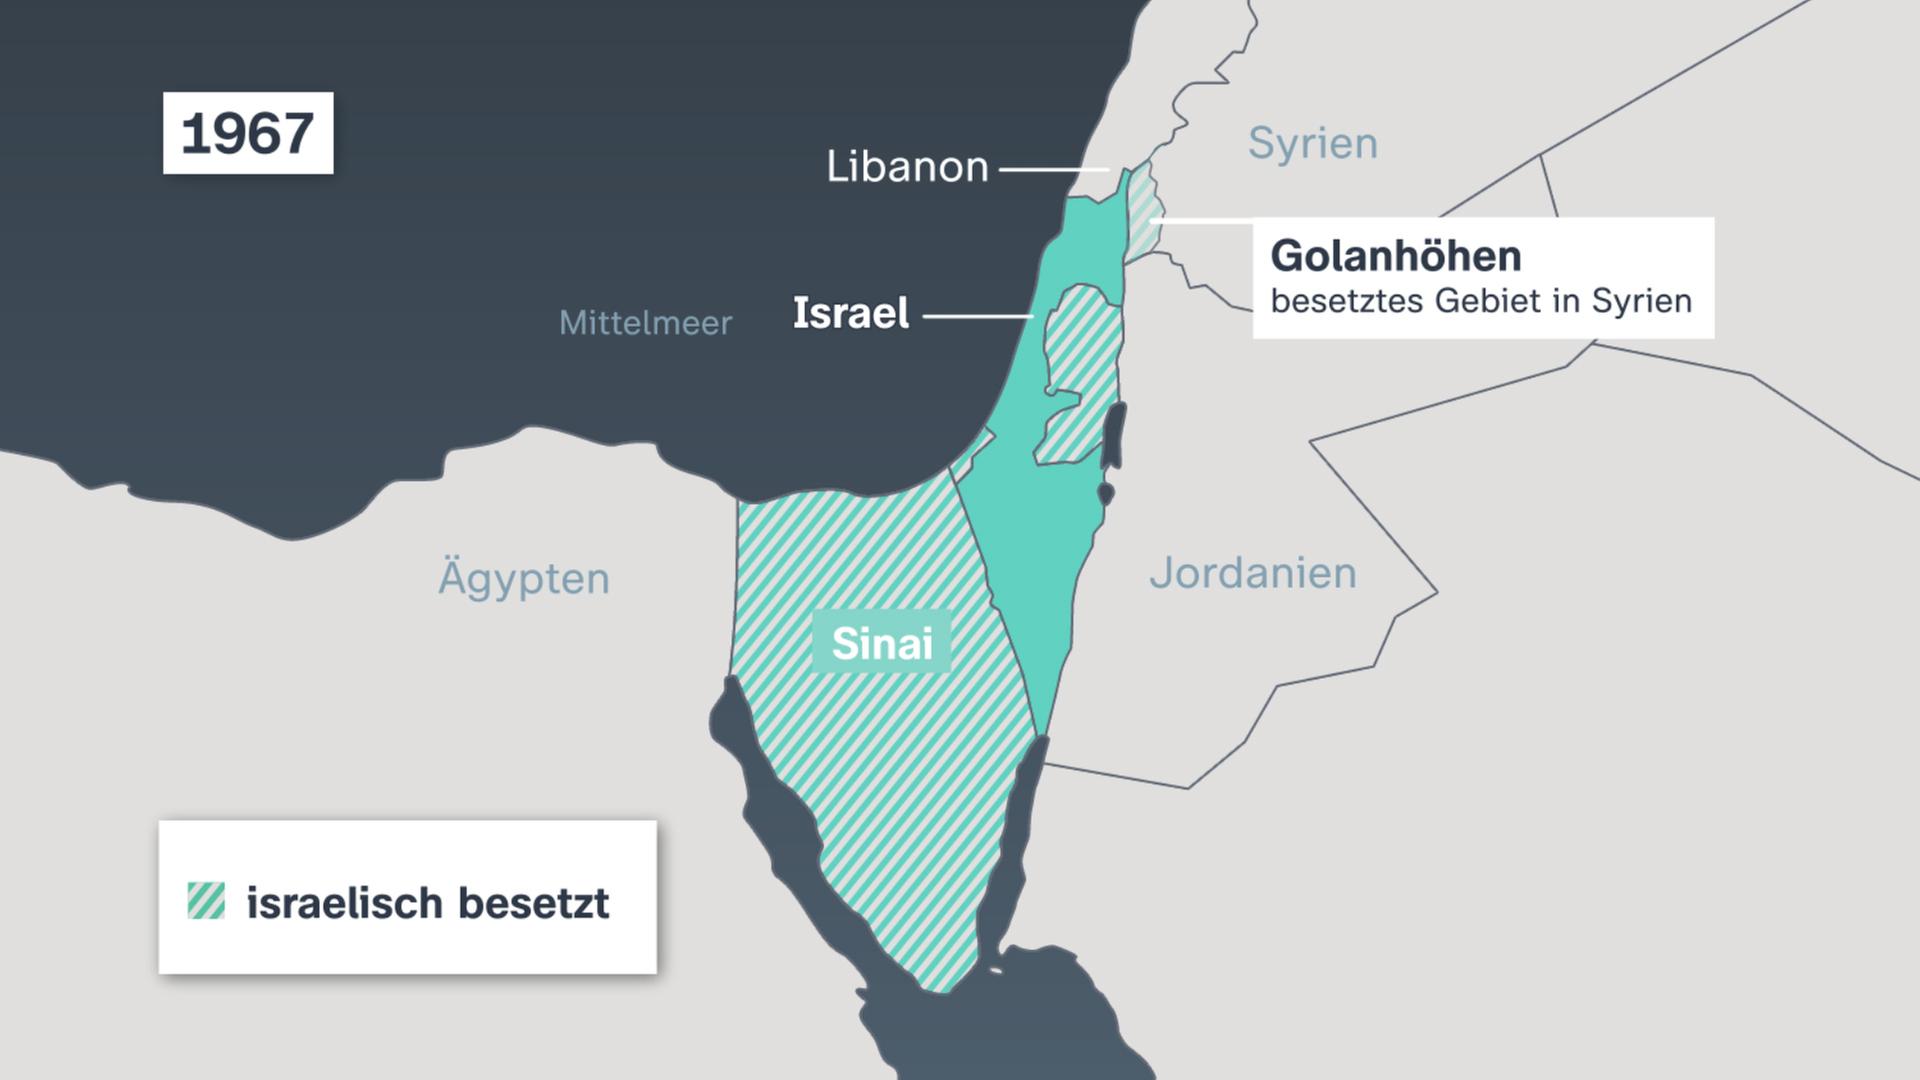 Karte von 1967 zeigt die Eroberungsgebiete von Israel. 